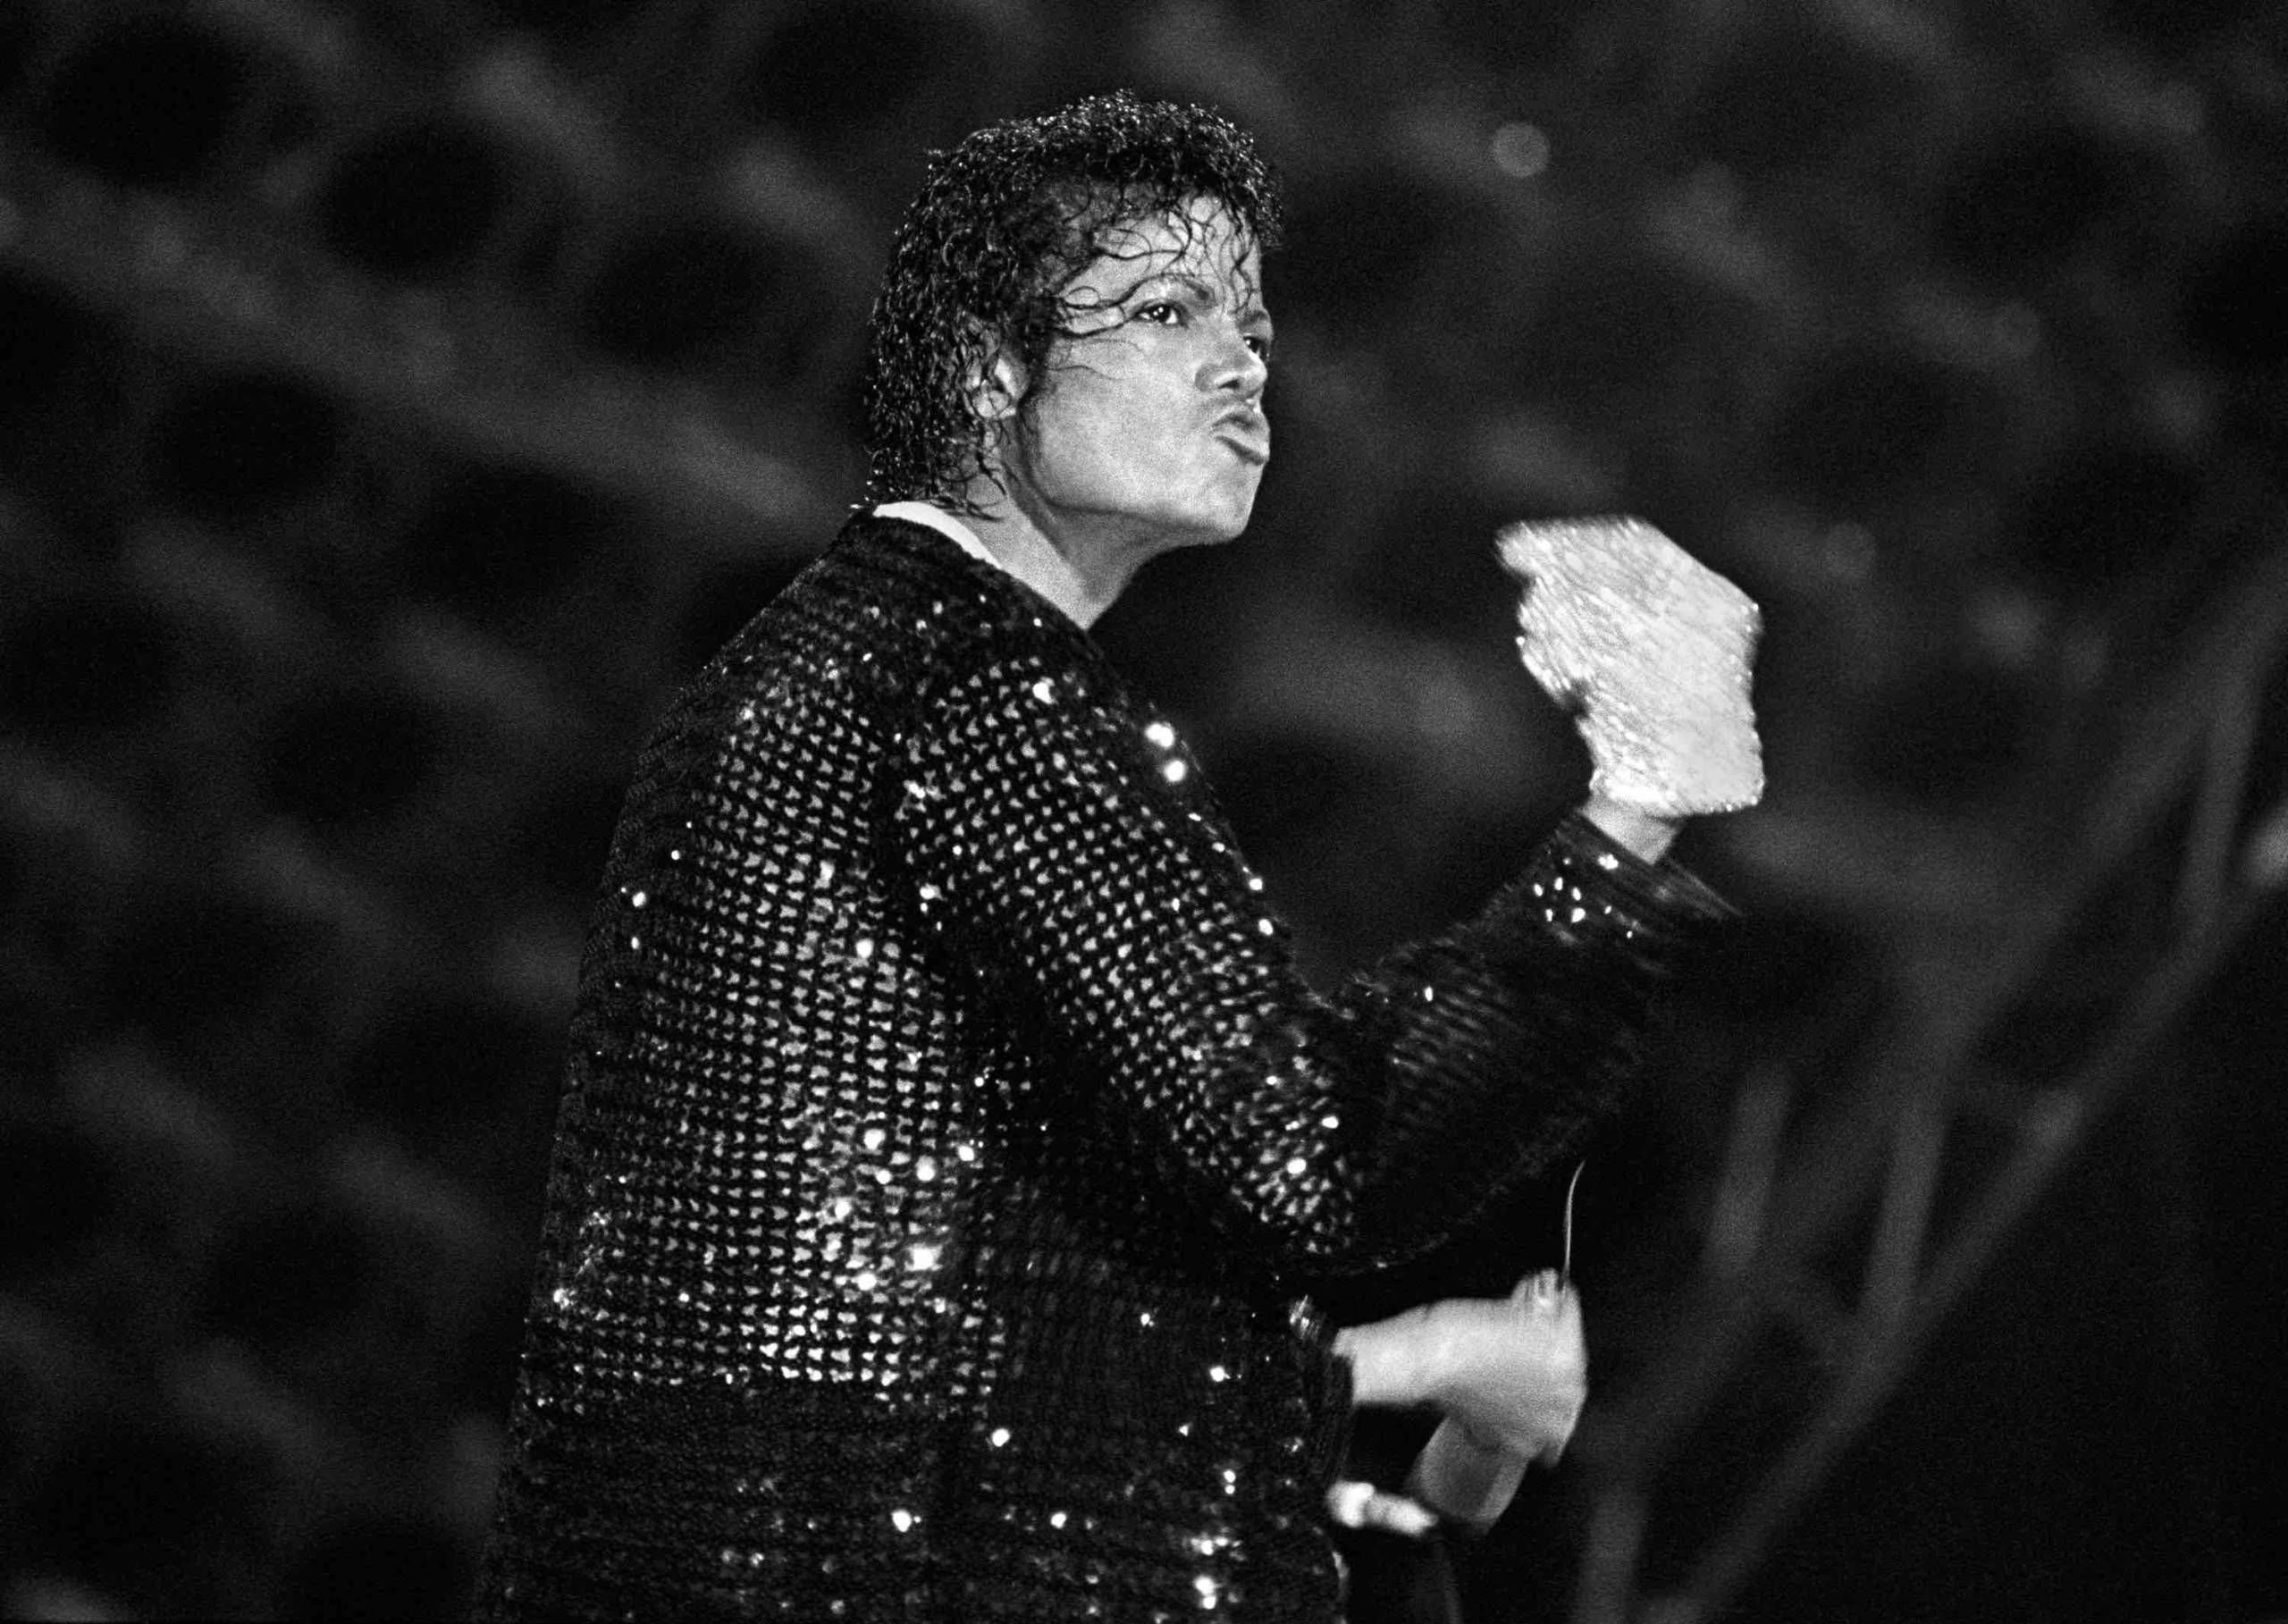 Woran starb Michael Jackson? Die schockierende Wahrheit